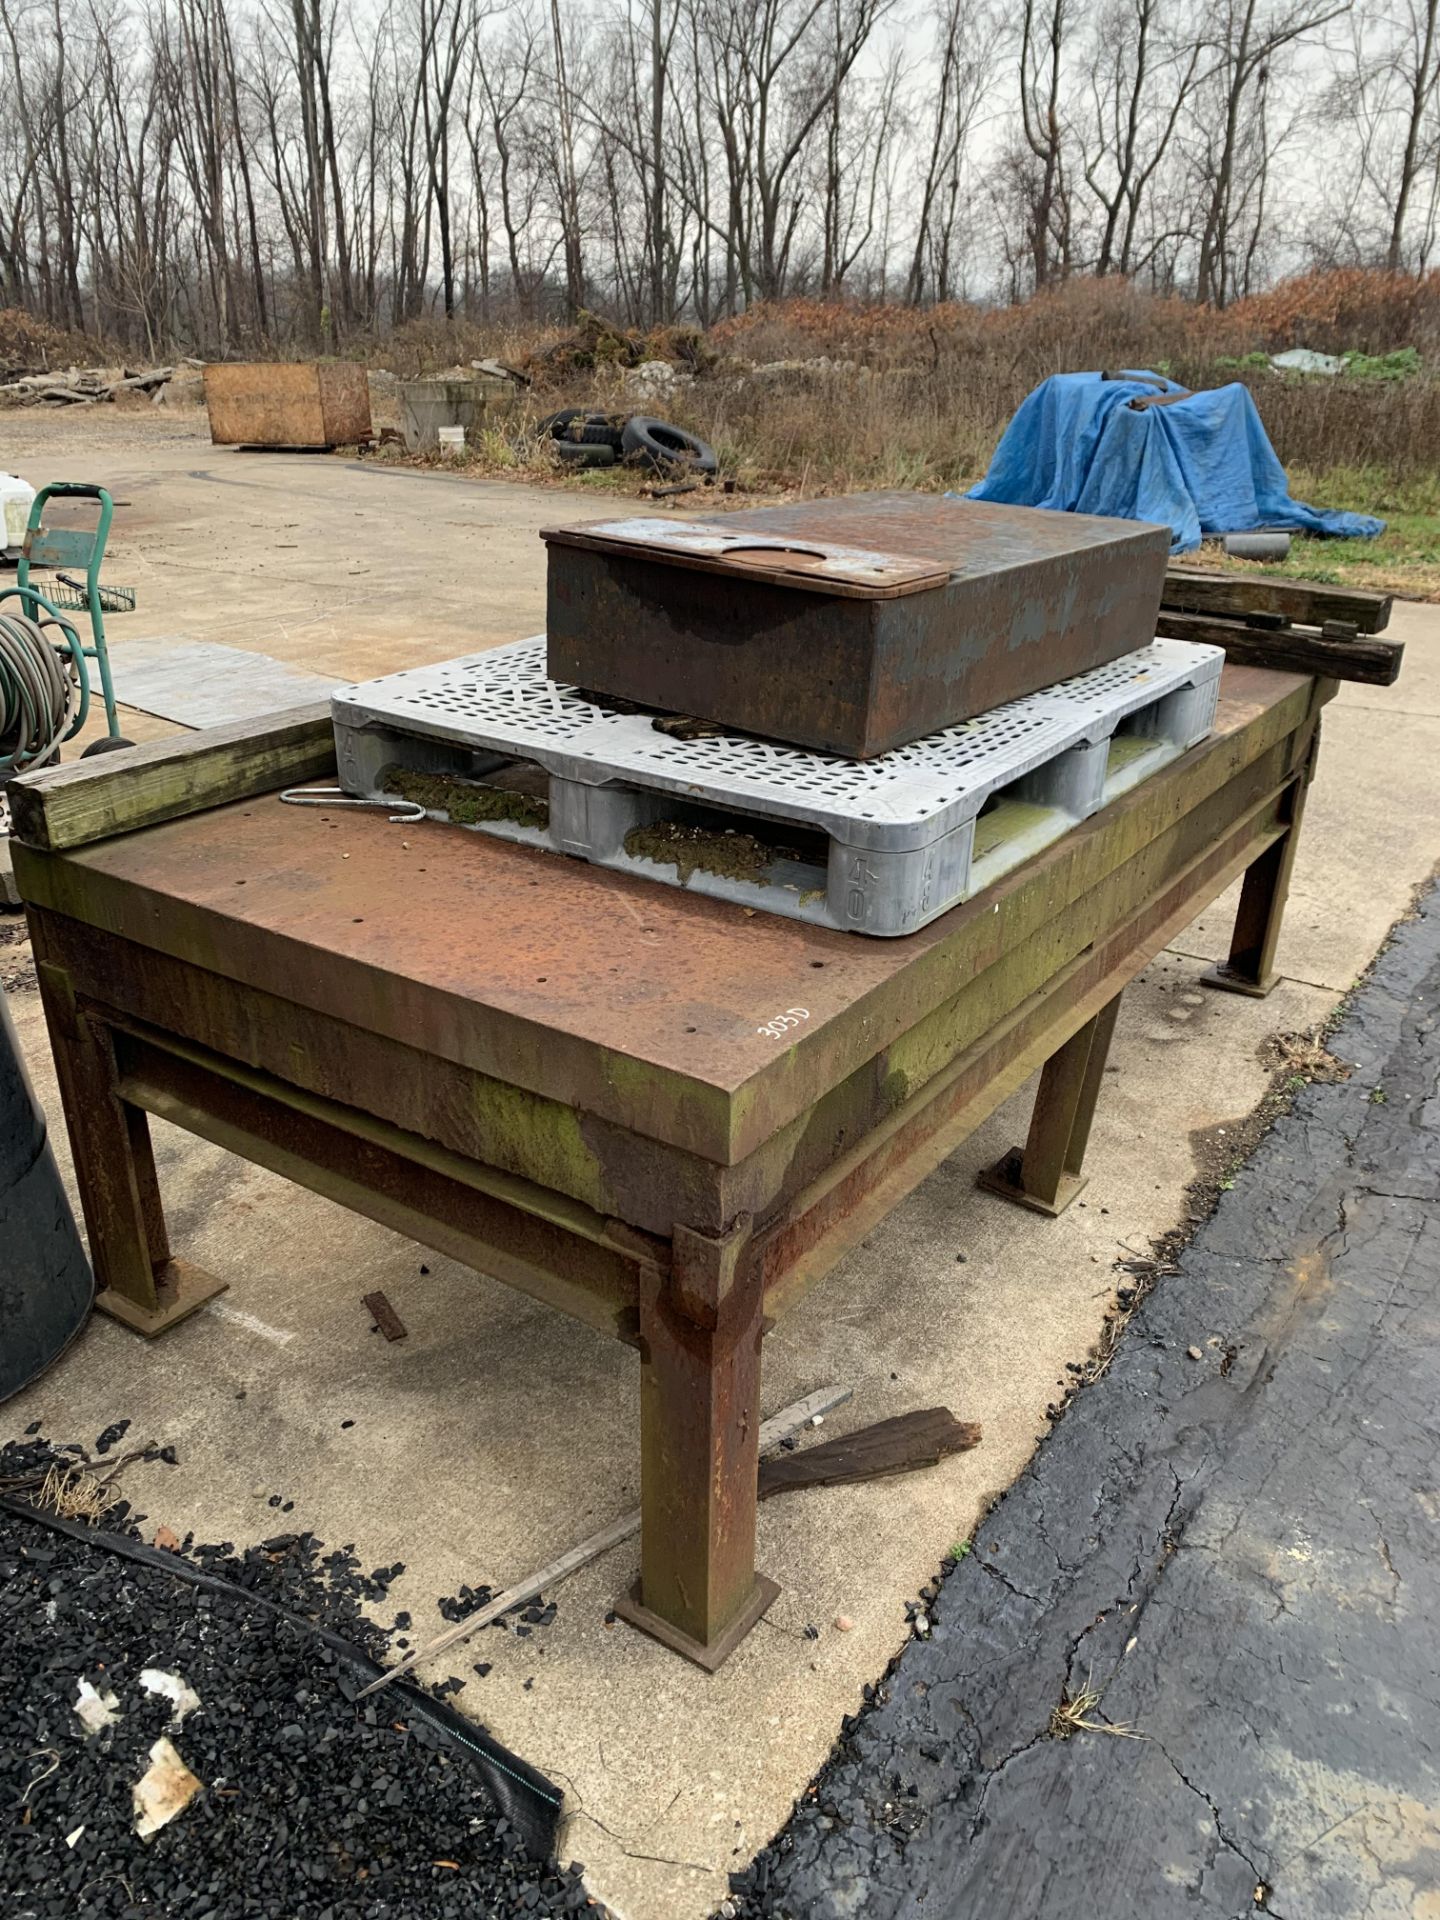 Steel weld table with steel block